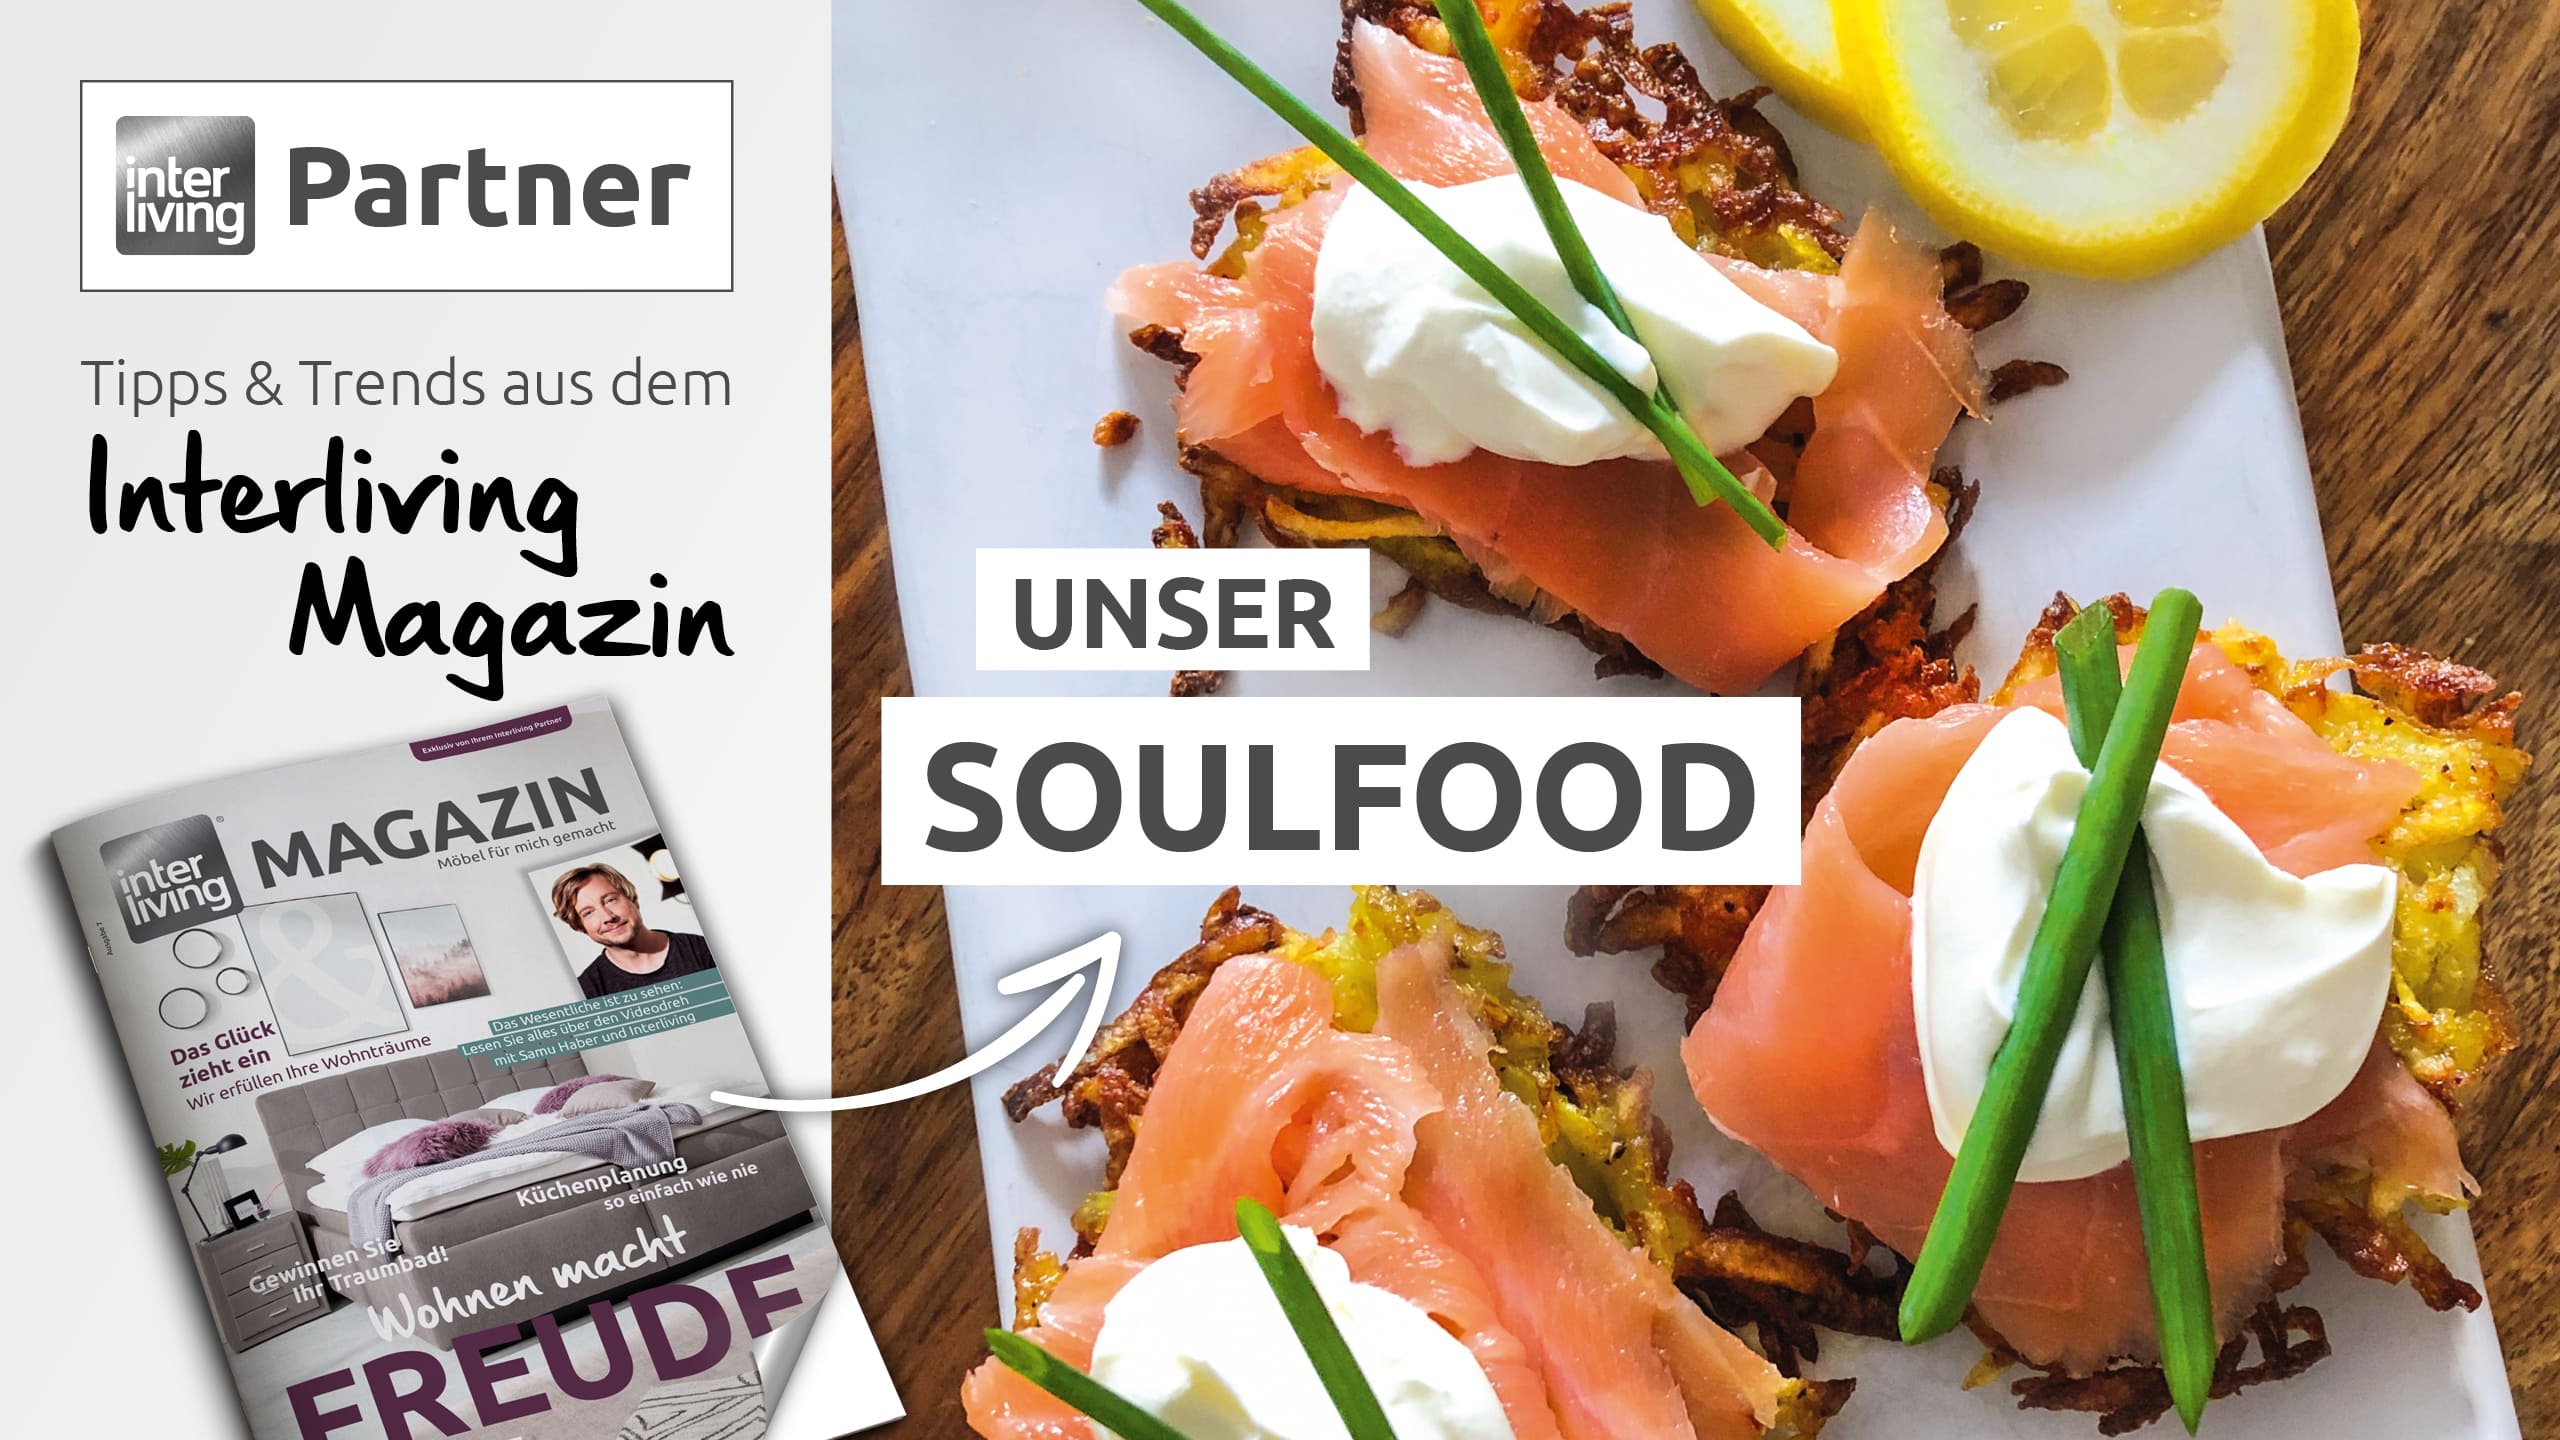 Interliving Partner Soulfood – Das Menü von unseren Wohnexperten